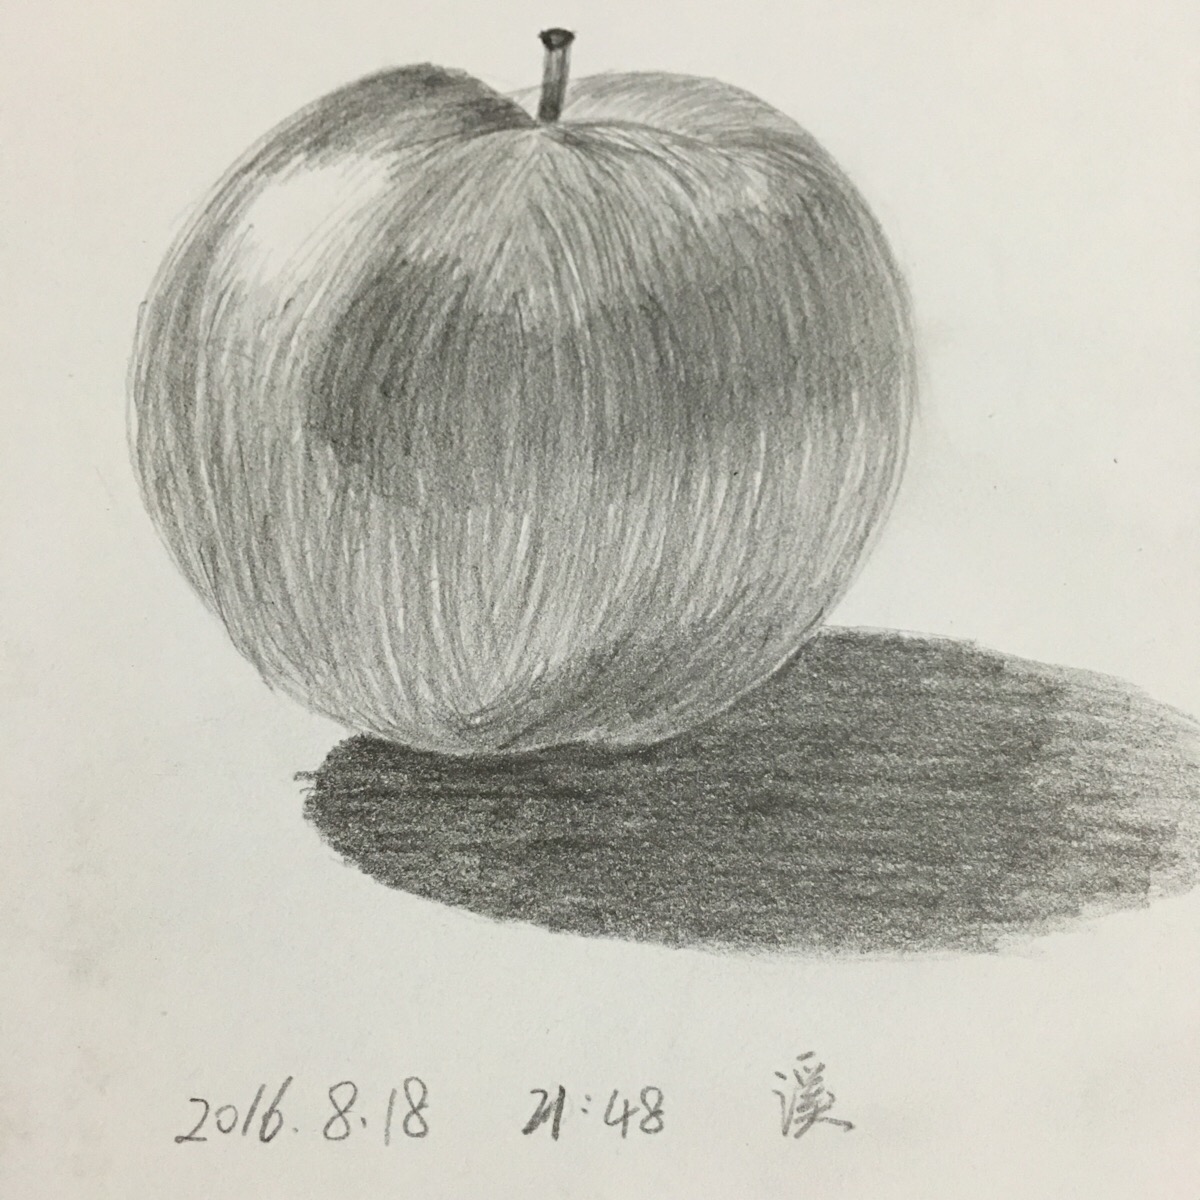 第一幅静物素描,又是苹果